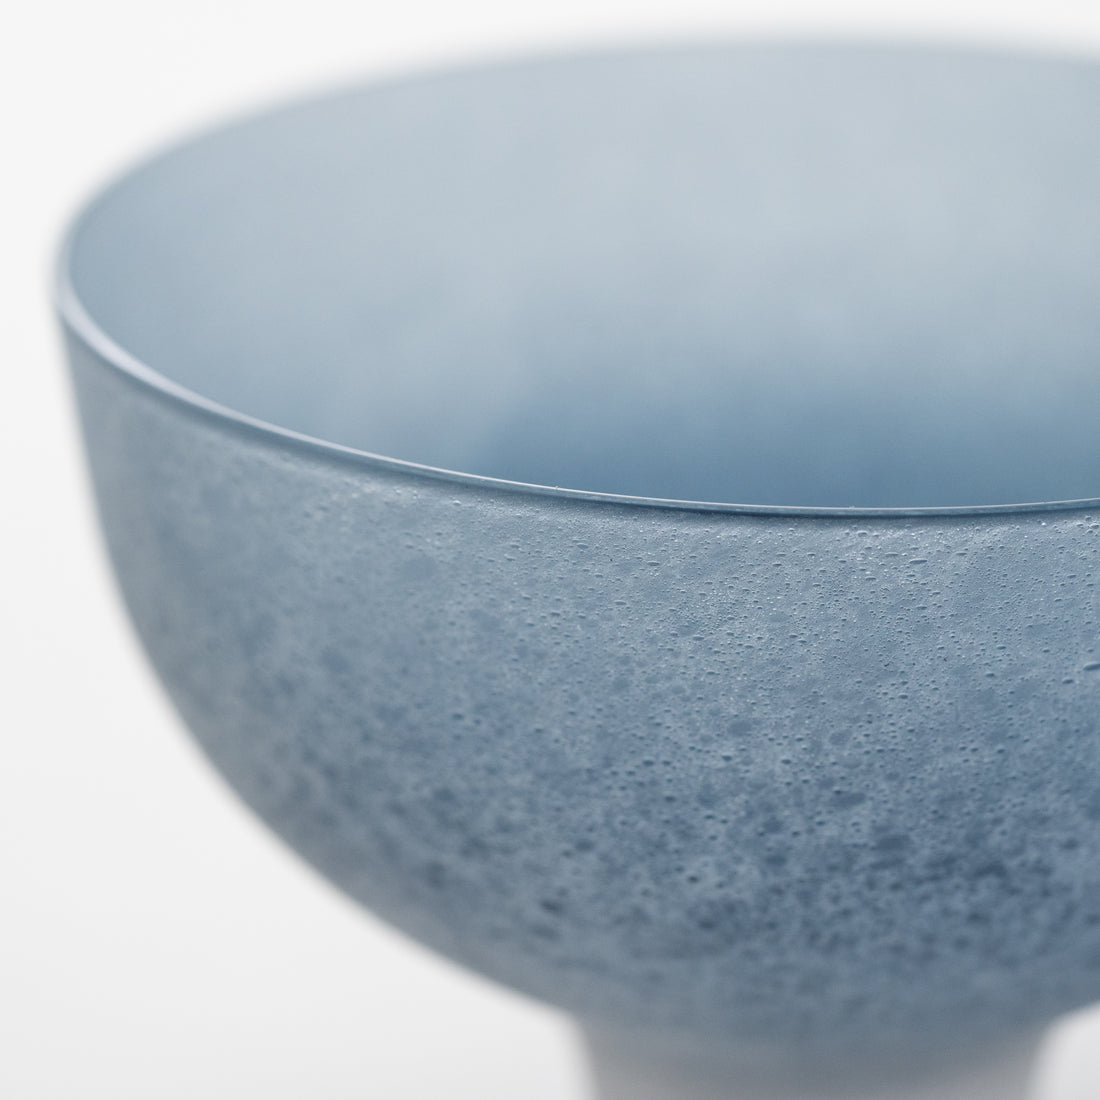 Utakata Bowl (Indigo Blue) / Yuko Sekino